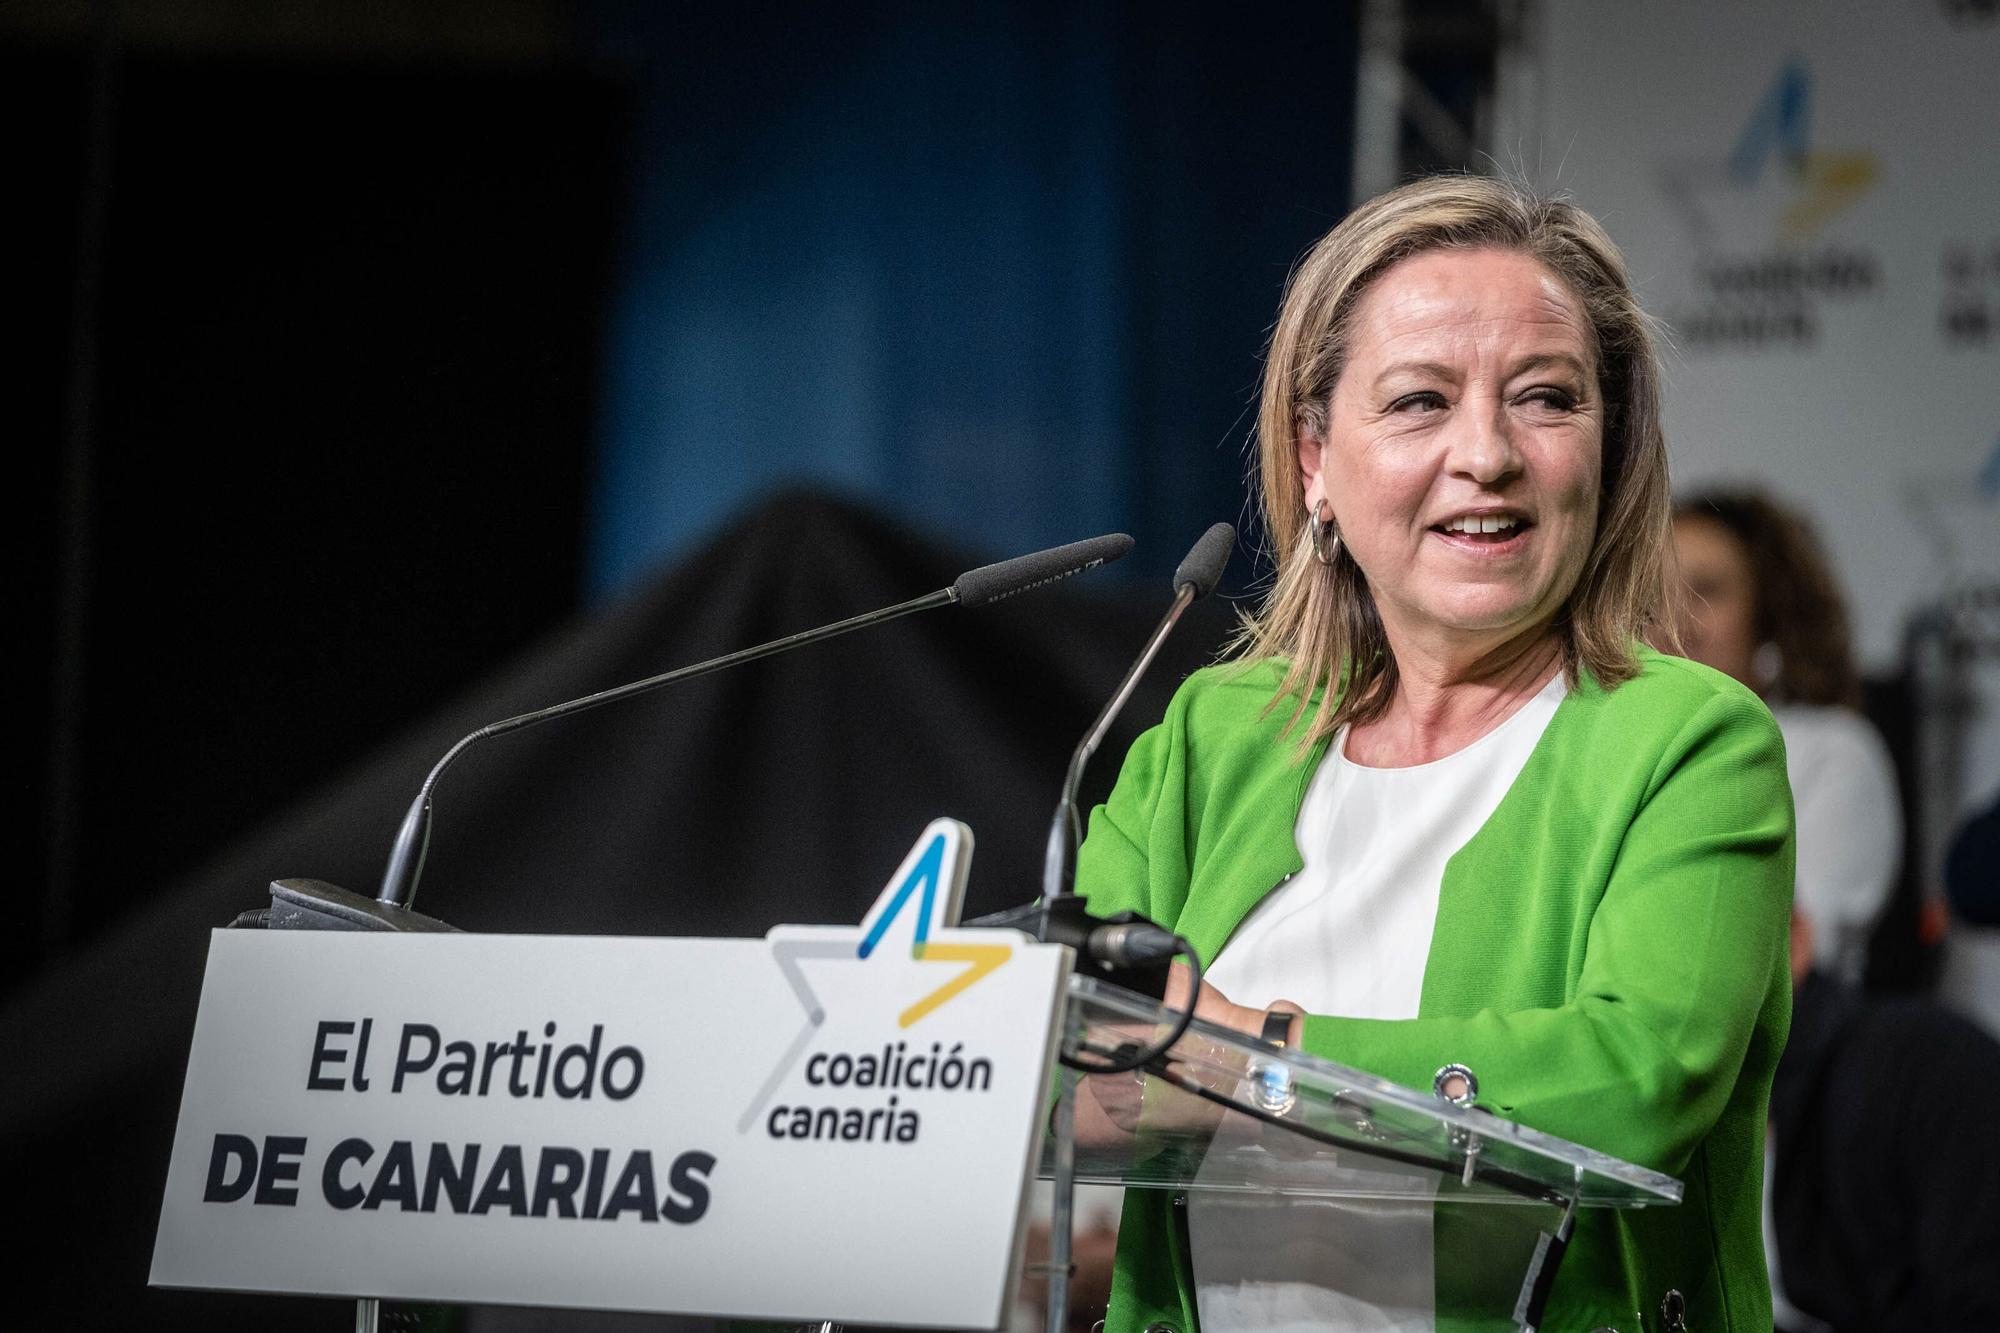 Candidaturas de Coalición Canaria en Tenerife.